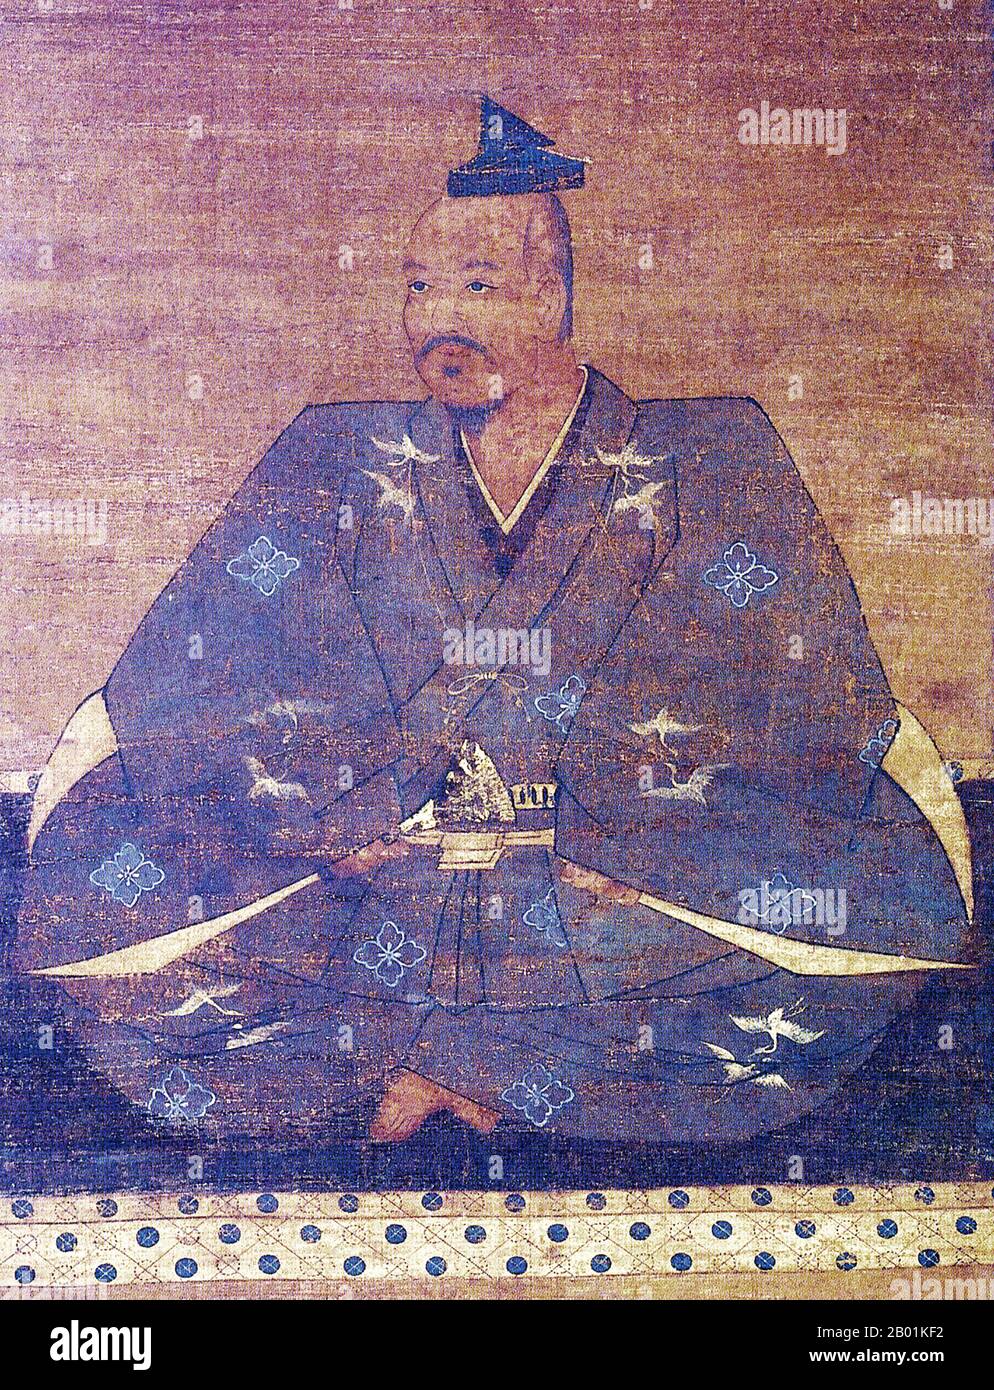 Giappone: Takeda Shingen (1 dicembre 1521 – 13 maggio 1573), daimyo del periodo Sengoku e militarista. Pittura in seta con rotolo appeso, XVI secolo. Takeda Shingen, della provincia di Kai, fu un daimyo preminente nel Giappone feudale con un eccezionale prestigio militare nella fase finale del periodo Sengoku. Conosciuto come la "Tigre del Kai", fu uno dei leader più potenti e influenti dell'epoca. È famoso per la battaglia di Mikatagahara, dove ha sconfitto con successo Tokugawa Ieyasu, consegnando al futuro shogun una delle sue peggiori sconfitte. Morì in circostanze poco chiare durante l'assedio del castello di Noda. Foto Stock